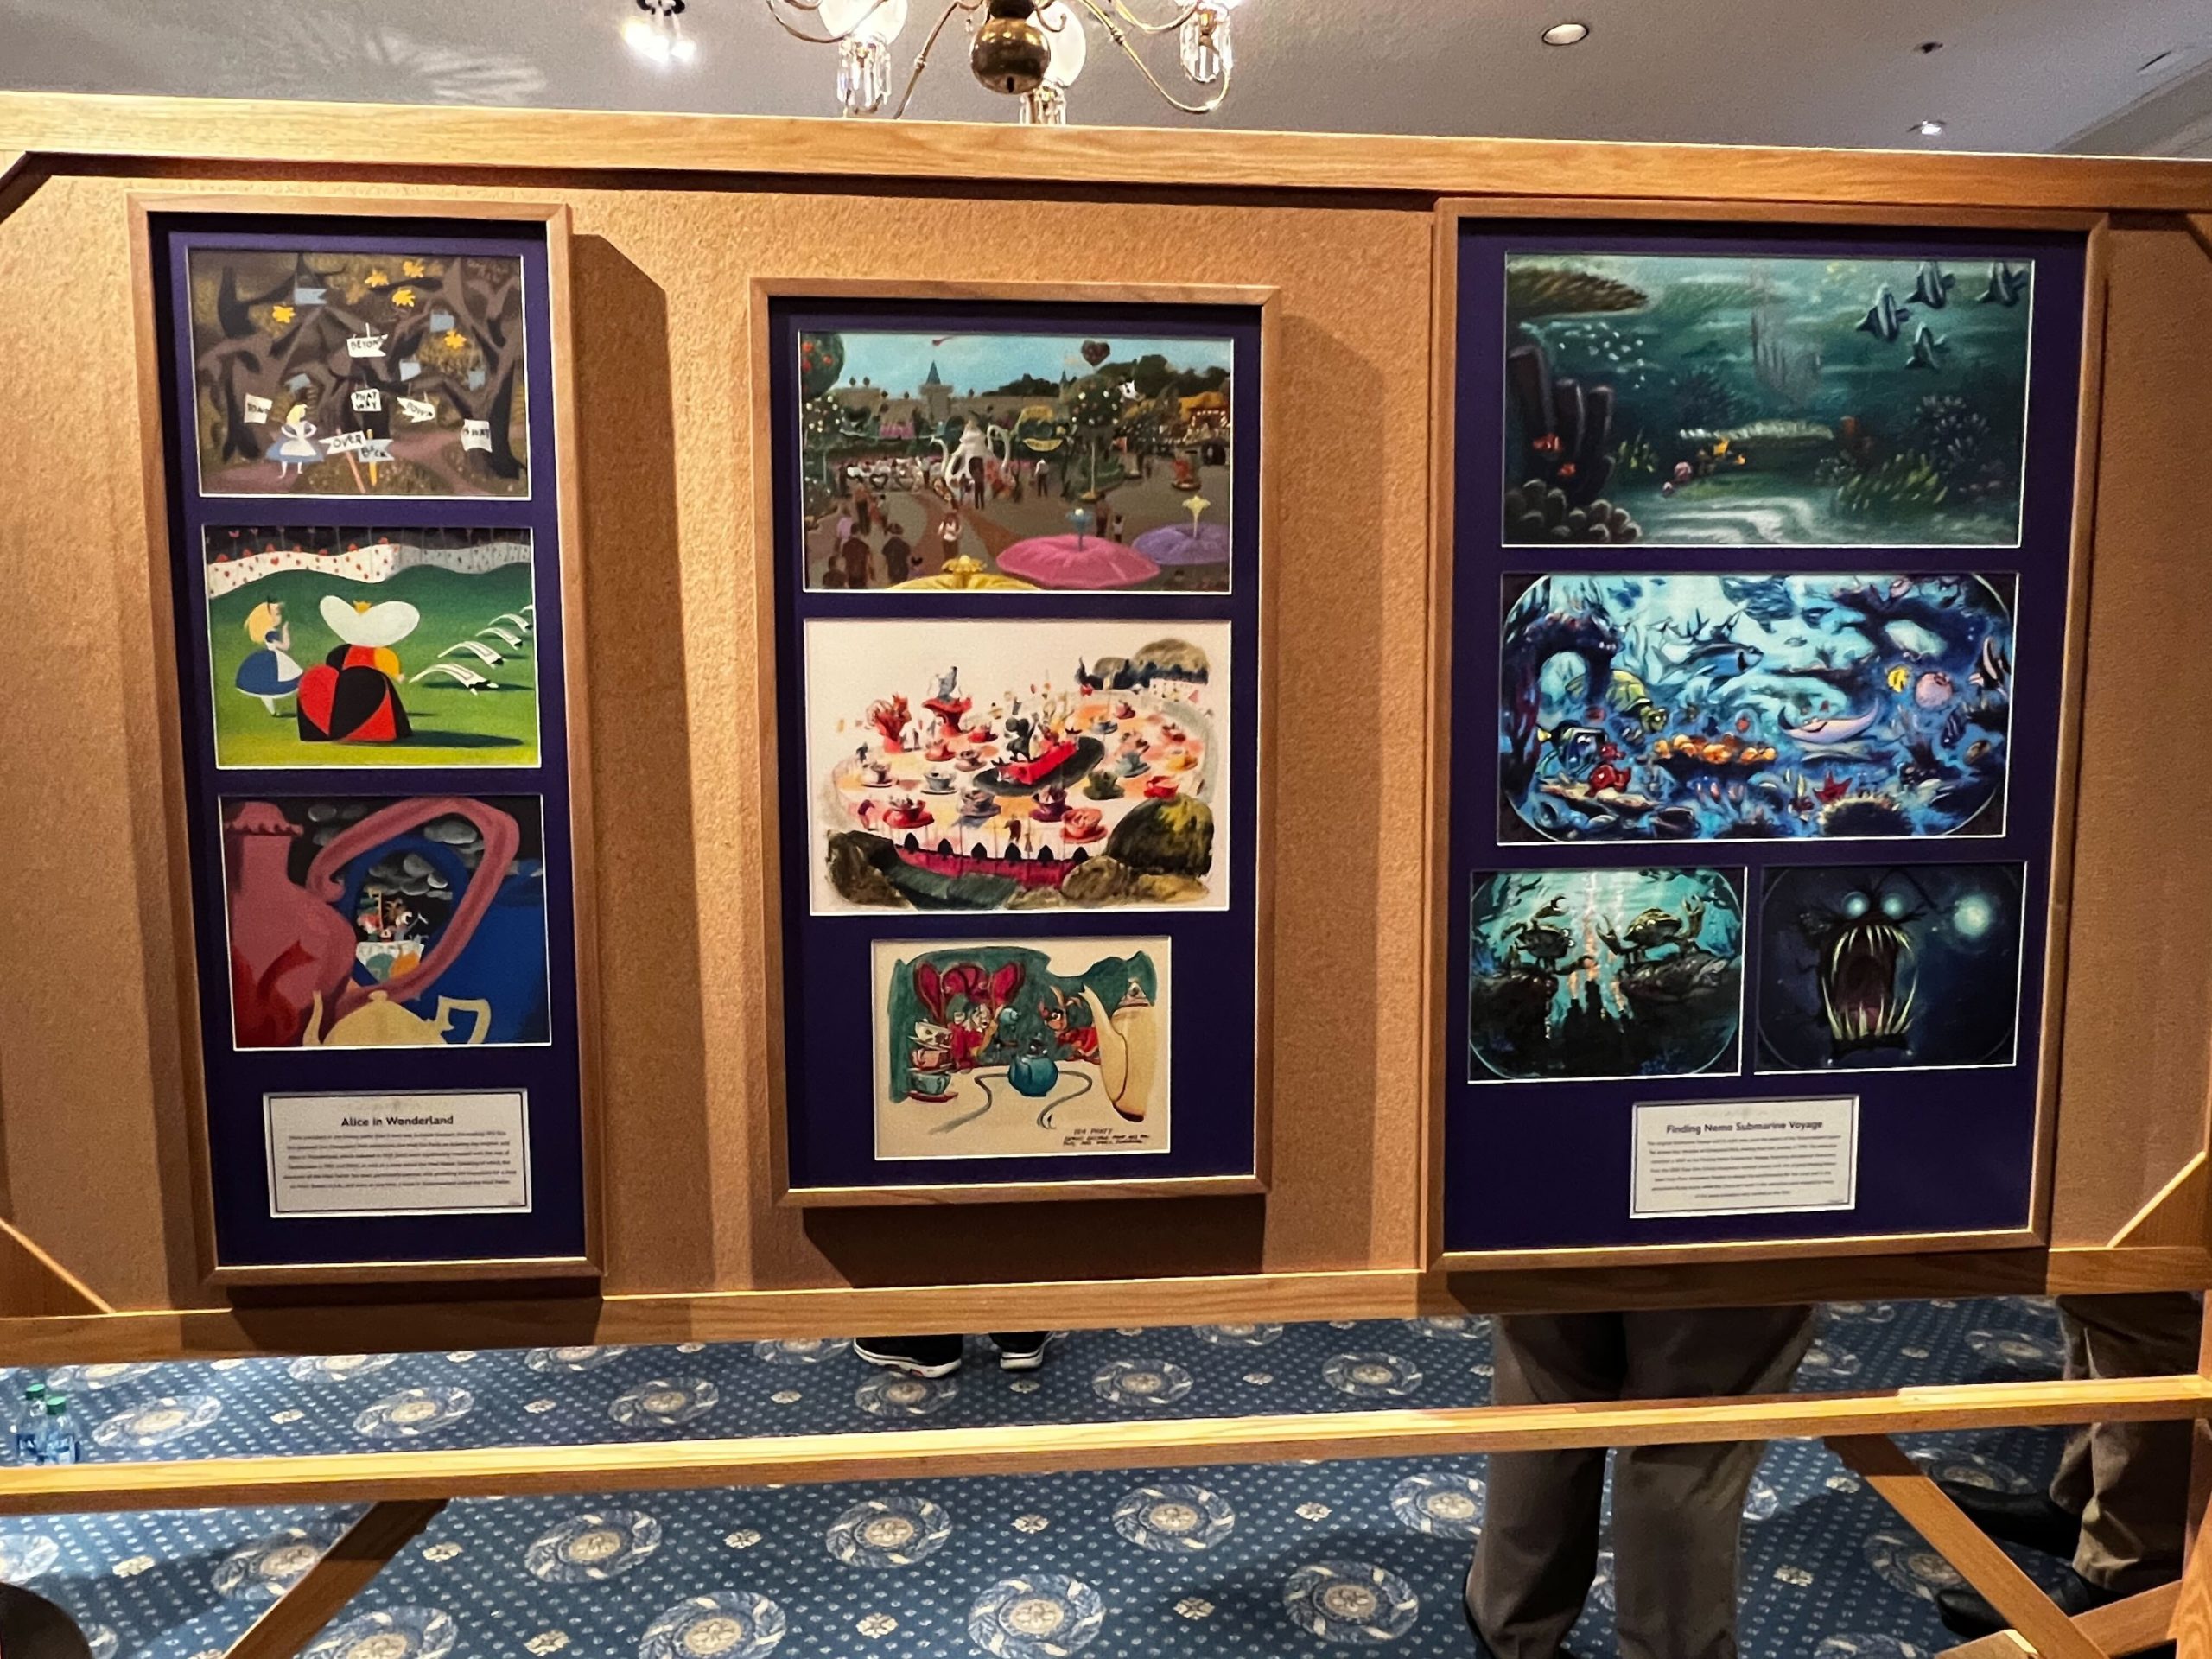 The Disney Gallery Presents: Disney 100 Years of Wonder